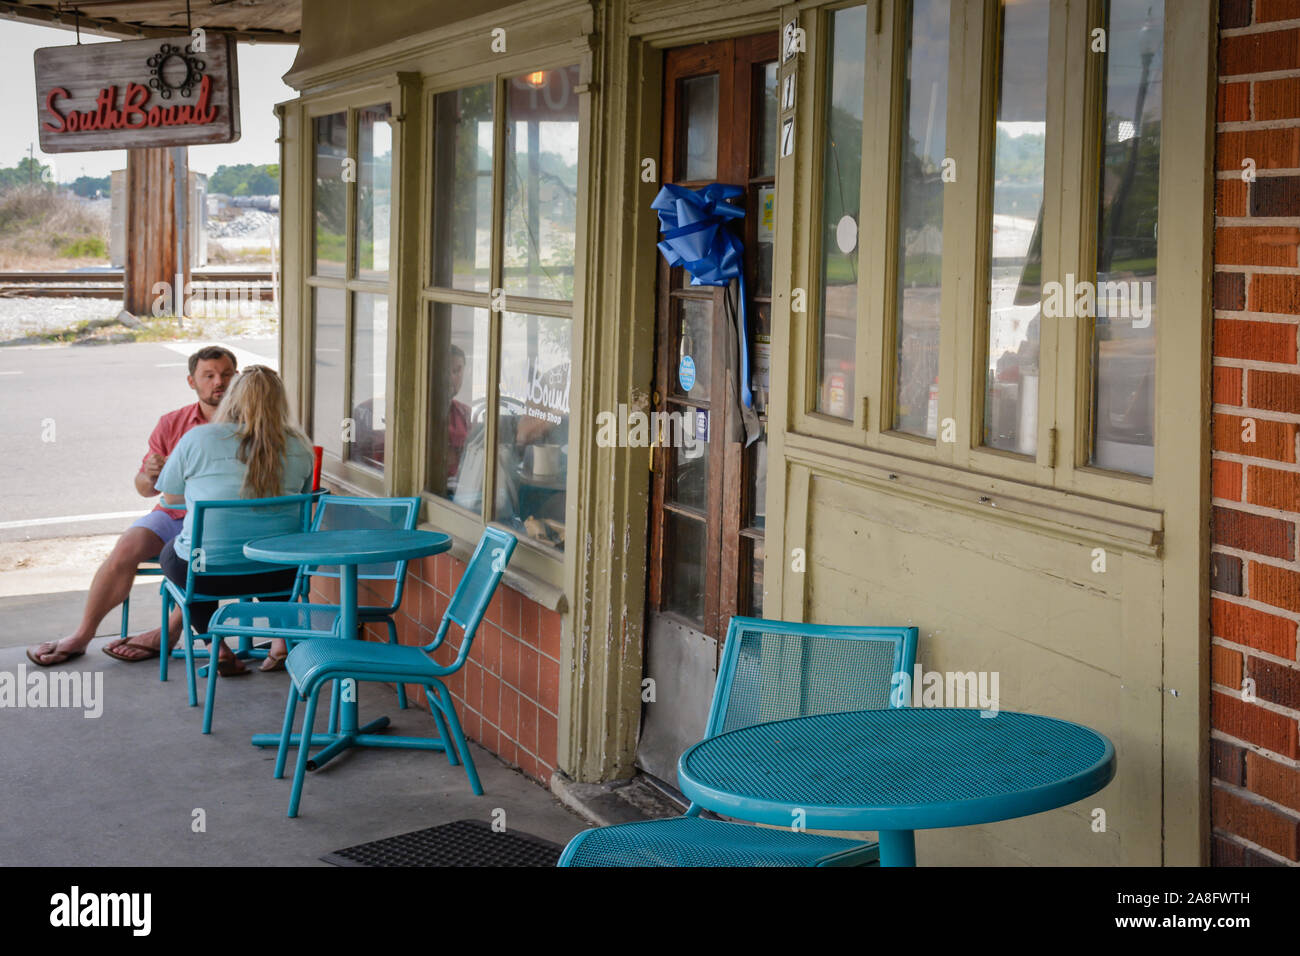 Un giovane caucasico rilassante al di fuori sul turchese bistro set del South Bound coffee shop nella piccola città America, Hattiesburg MS, STATI UNITI D'AMERICA Foto Stock